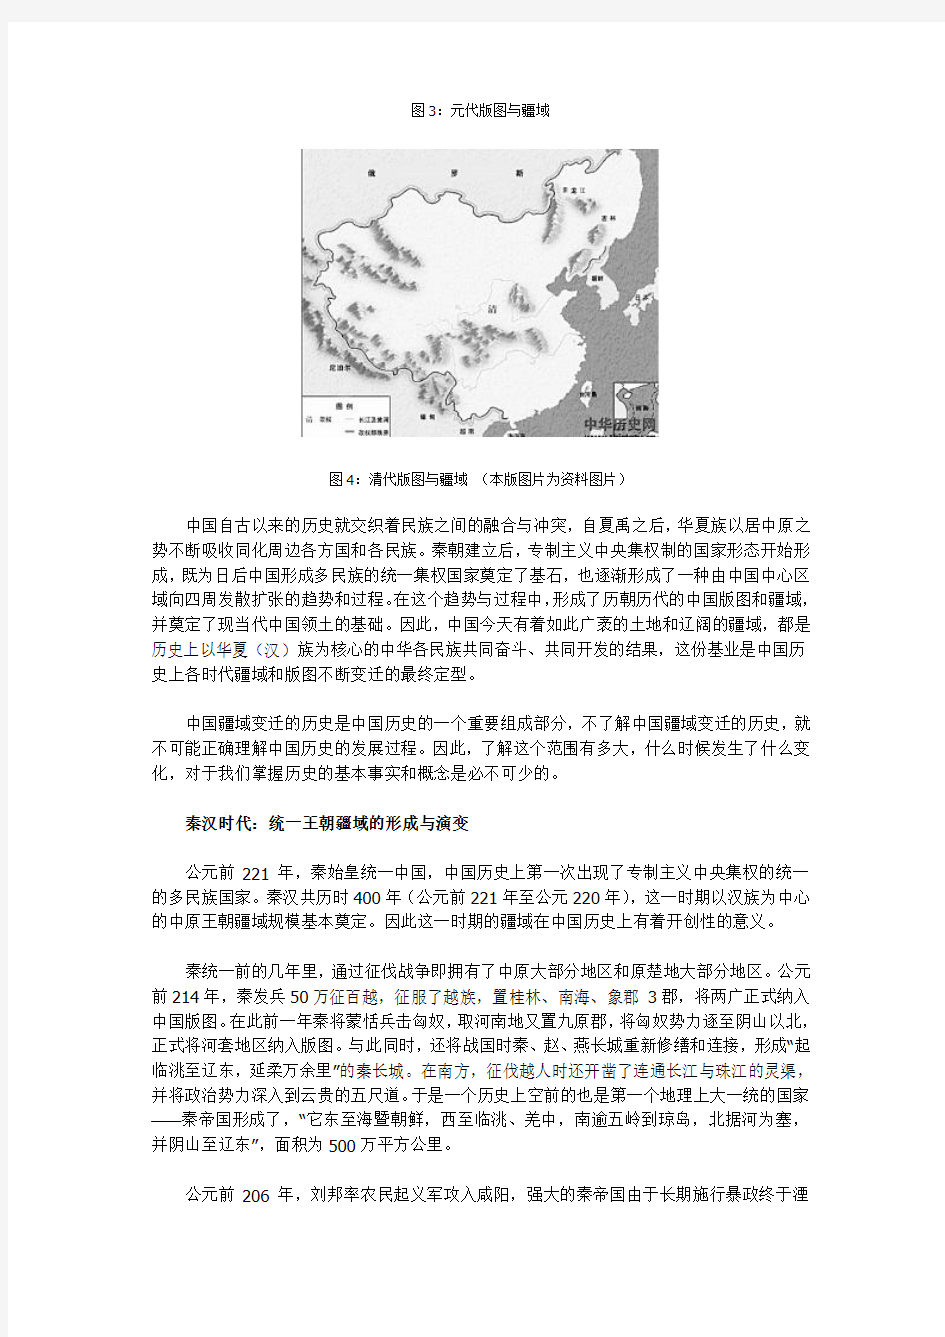 地图上的大中华——中国历史上主要王朝的疆域和版图变迁